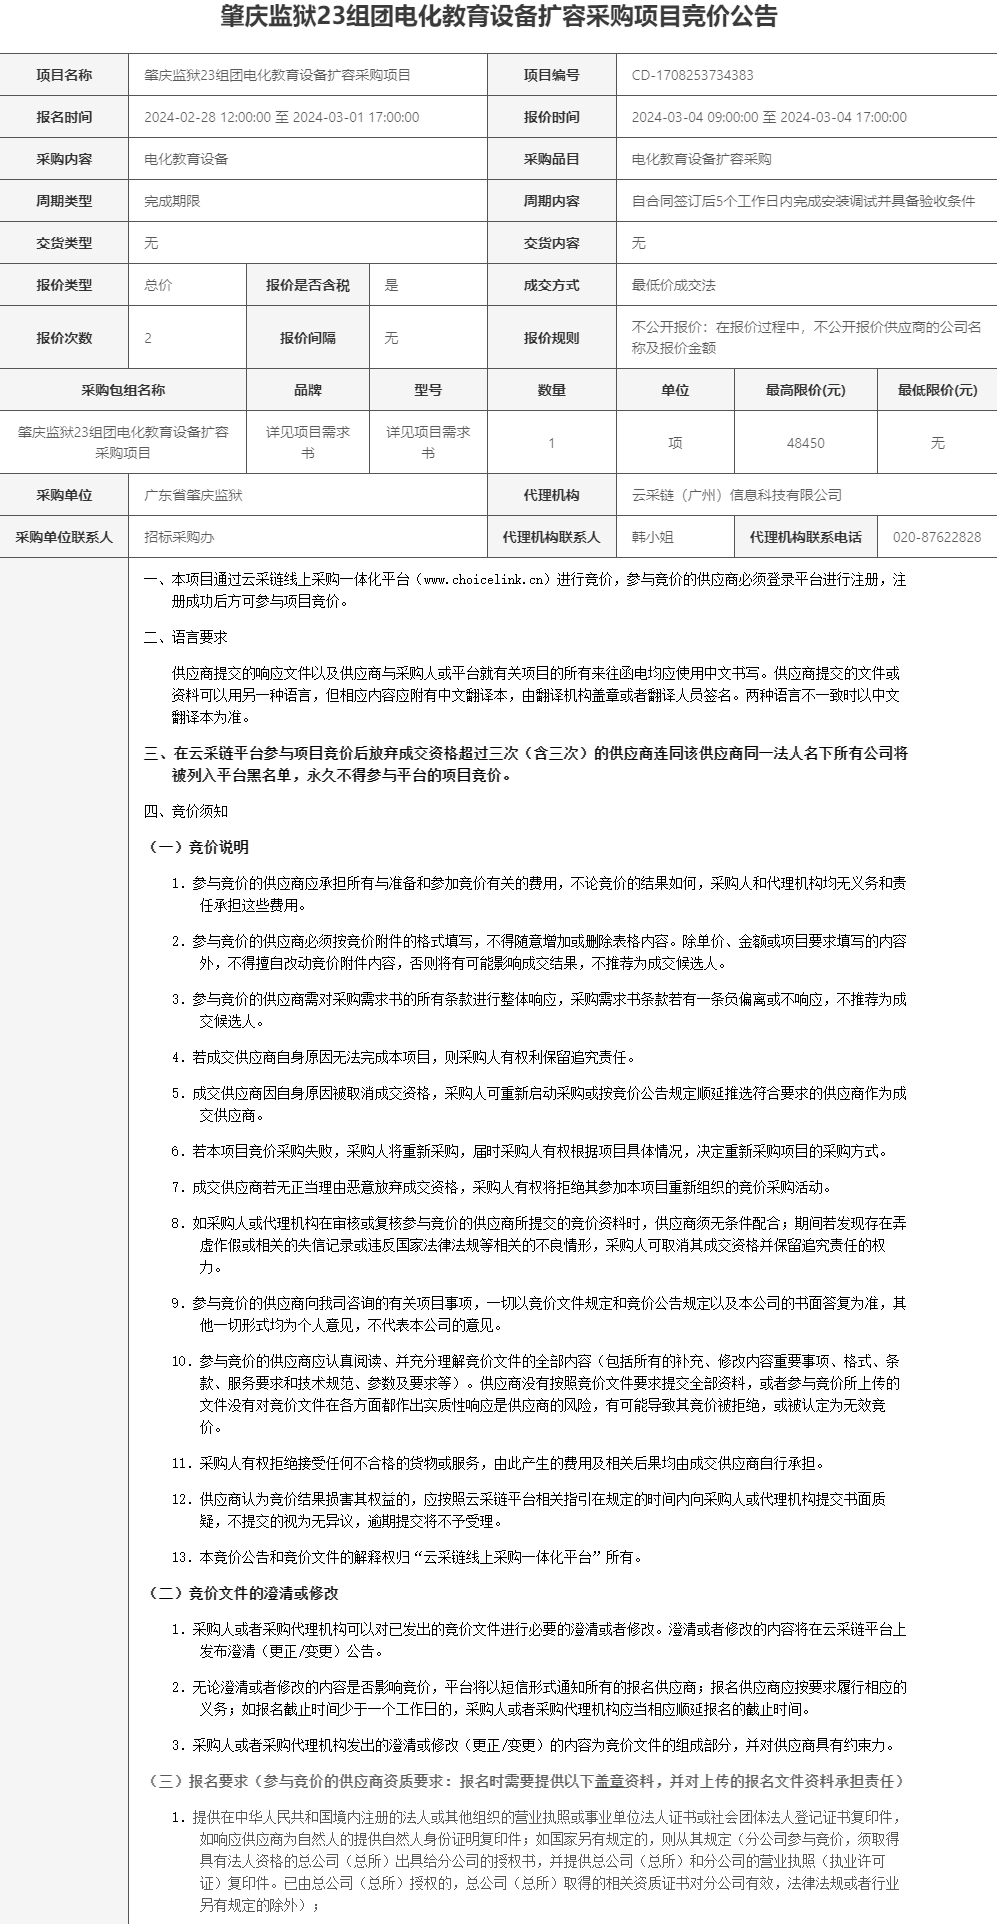 肇庆监狱23组团电化教育设备扩容采购项目竞价公告1.png